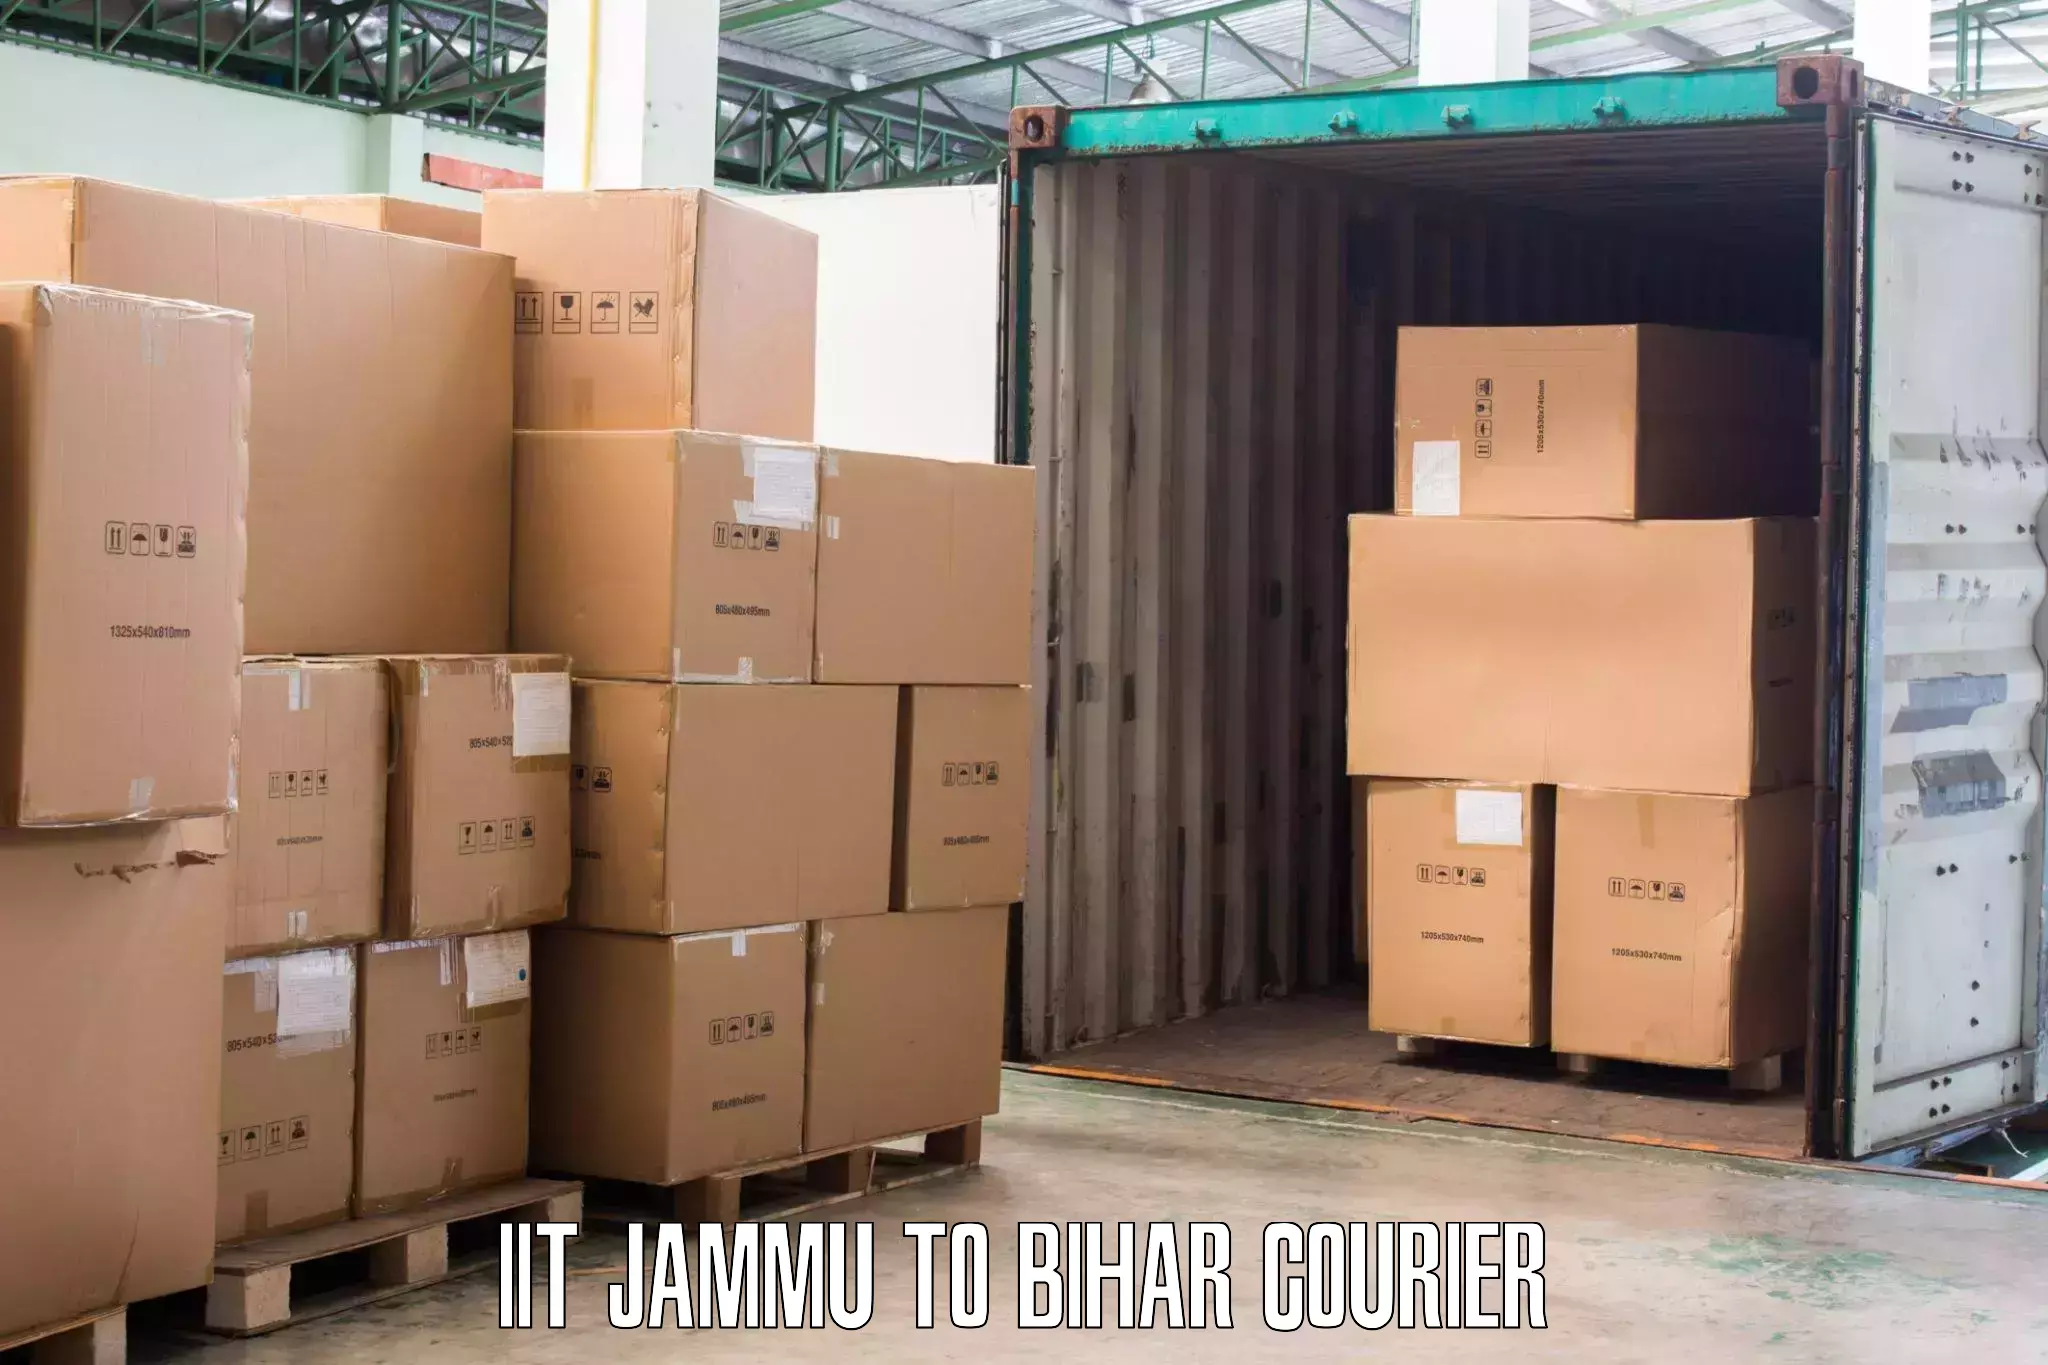 Local furniture movers in IIT Jammu to Rajgir